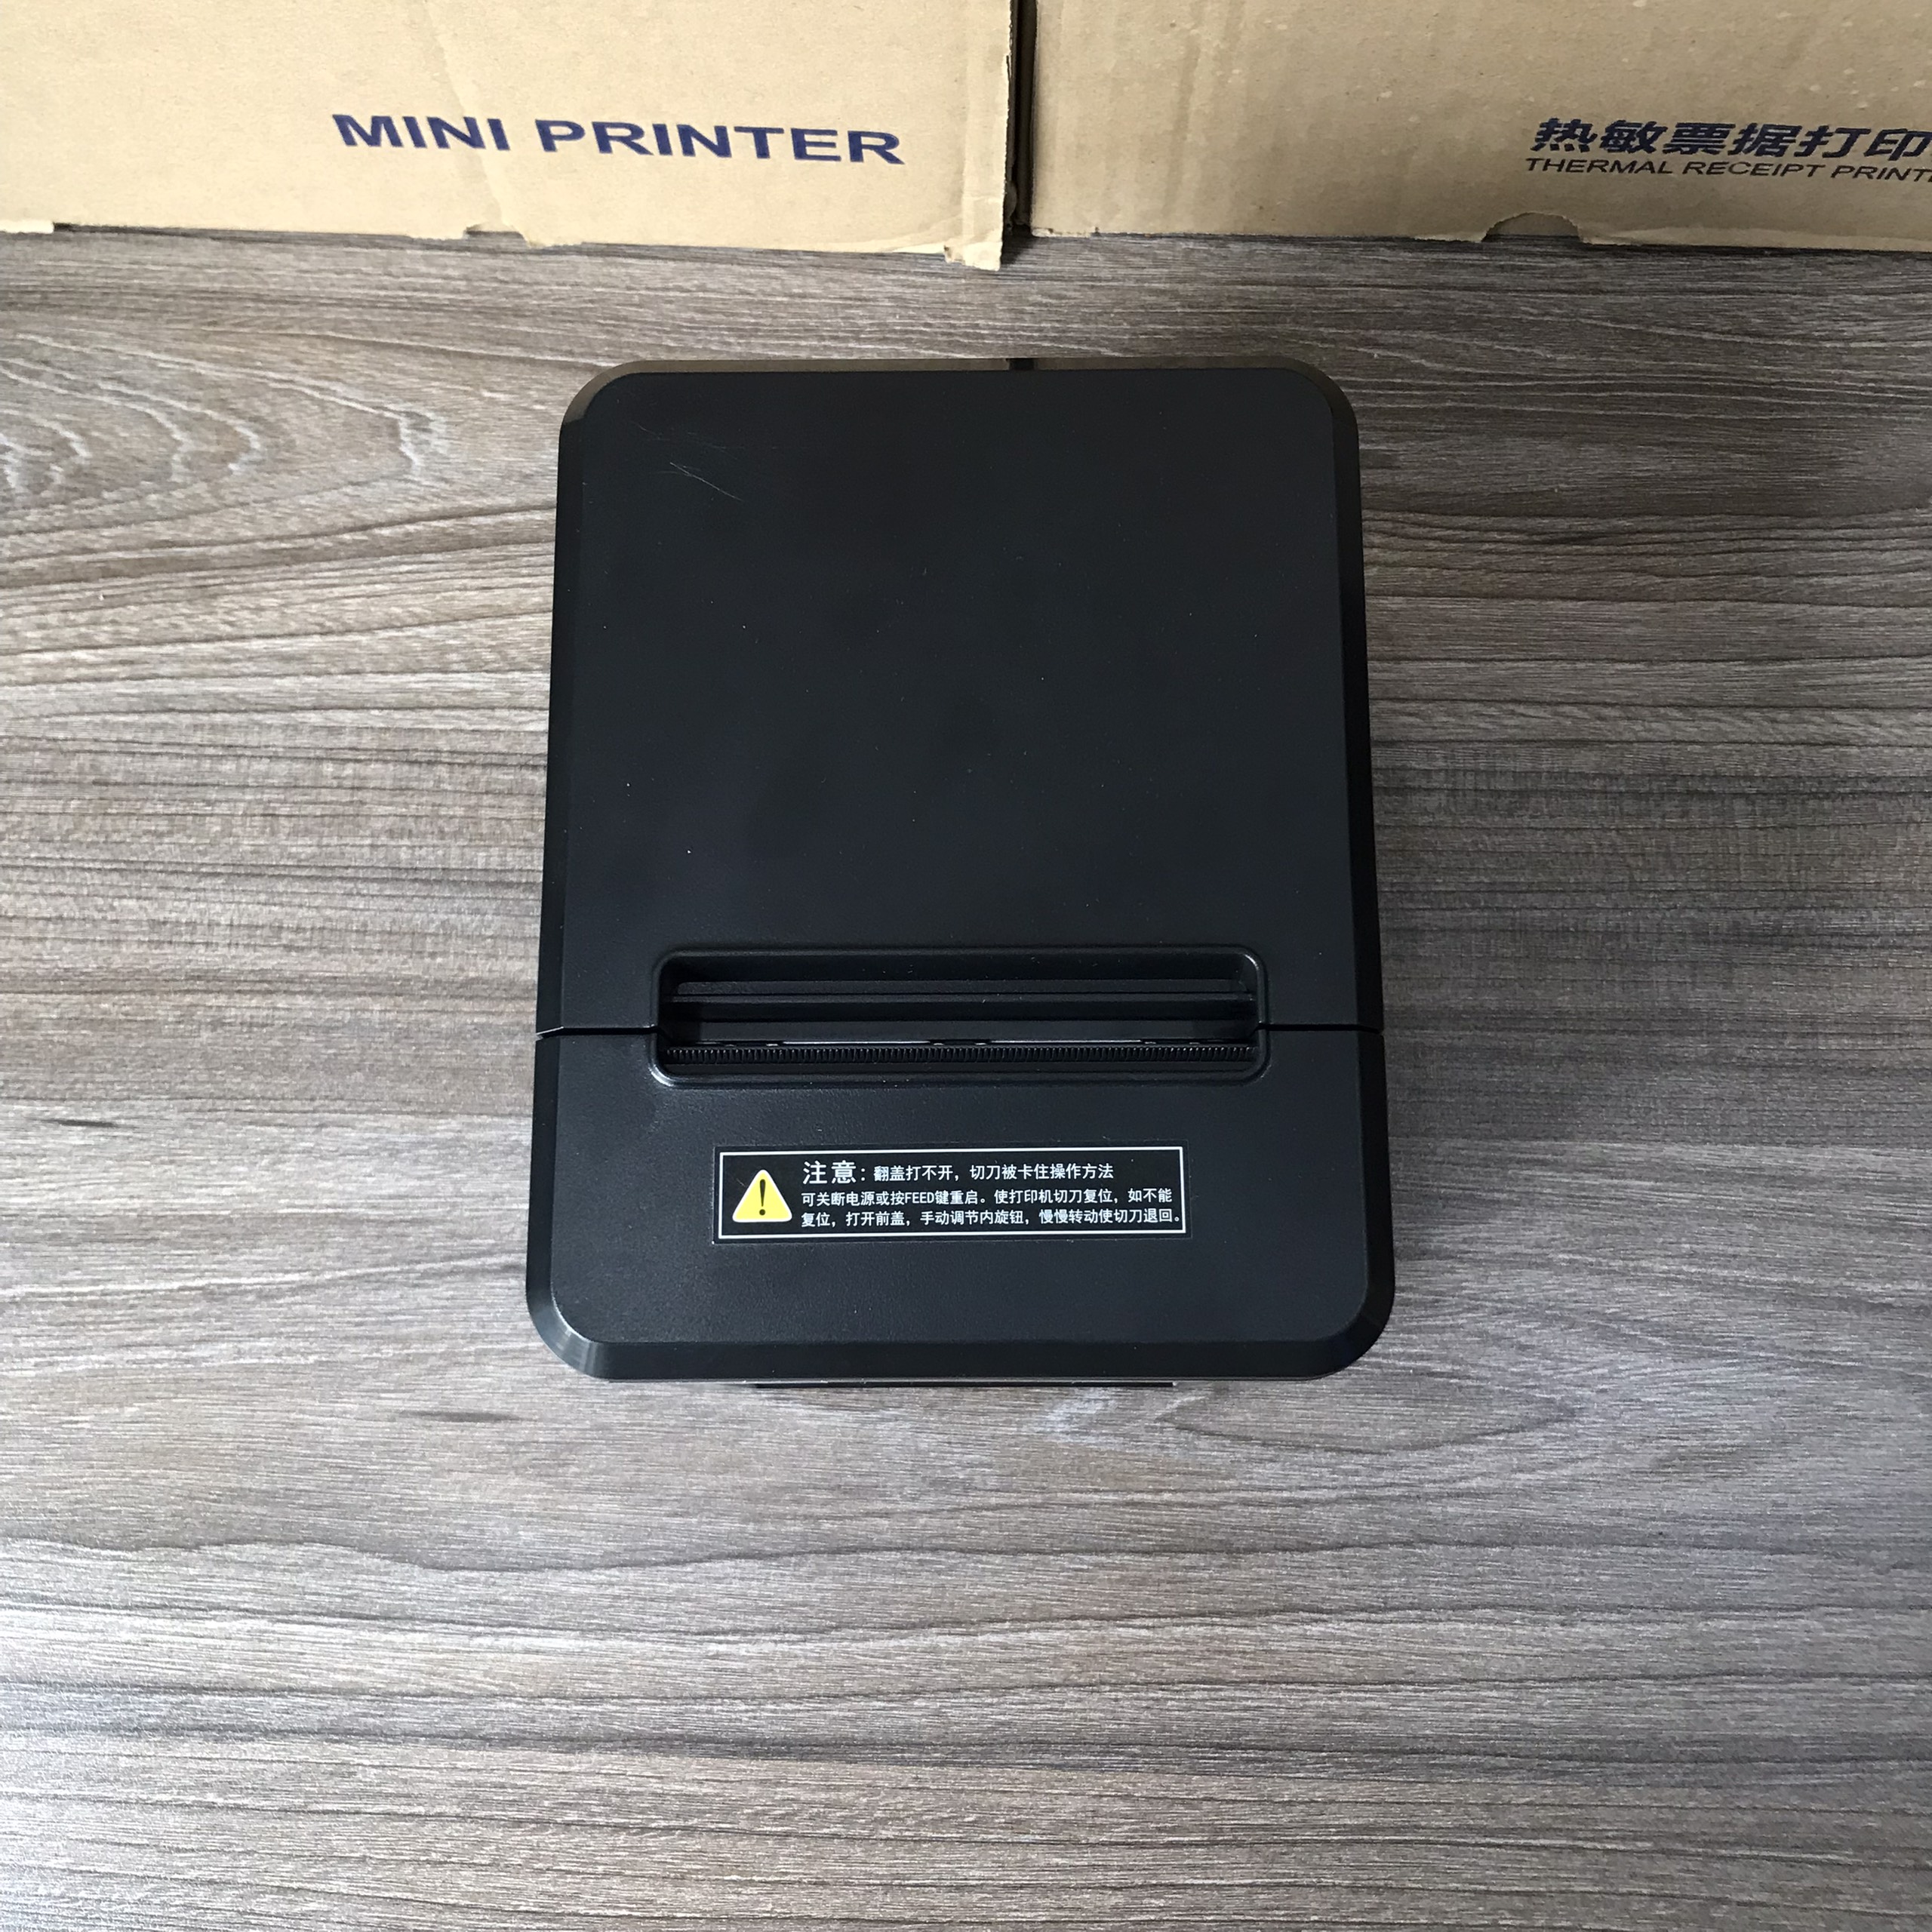 Máy in bill chính hãng xprinter, hóa đơn nhiệt khổ 80mm K80 Xprinter T80A/Q80A -Cổng USB/ tốc độ in 160mm/s- [HÀNG CHÍNH HÃNG]